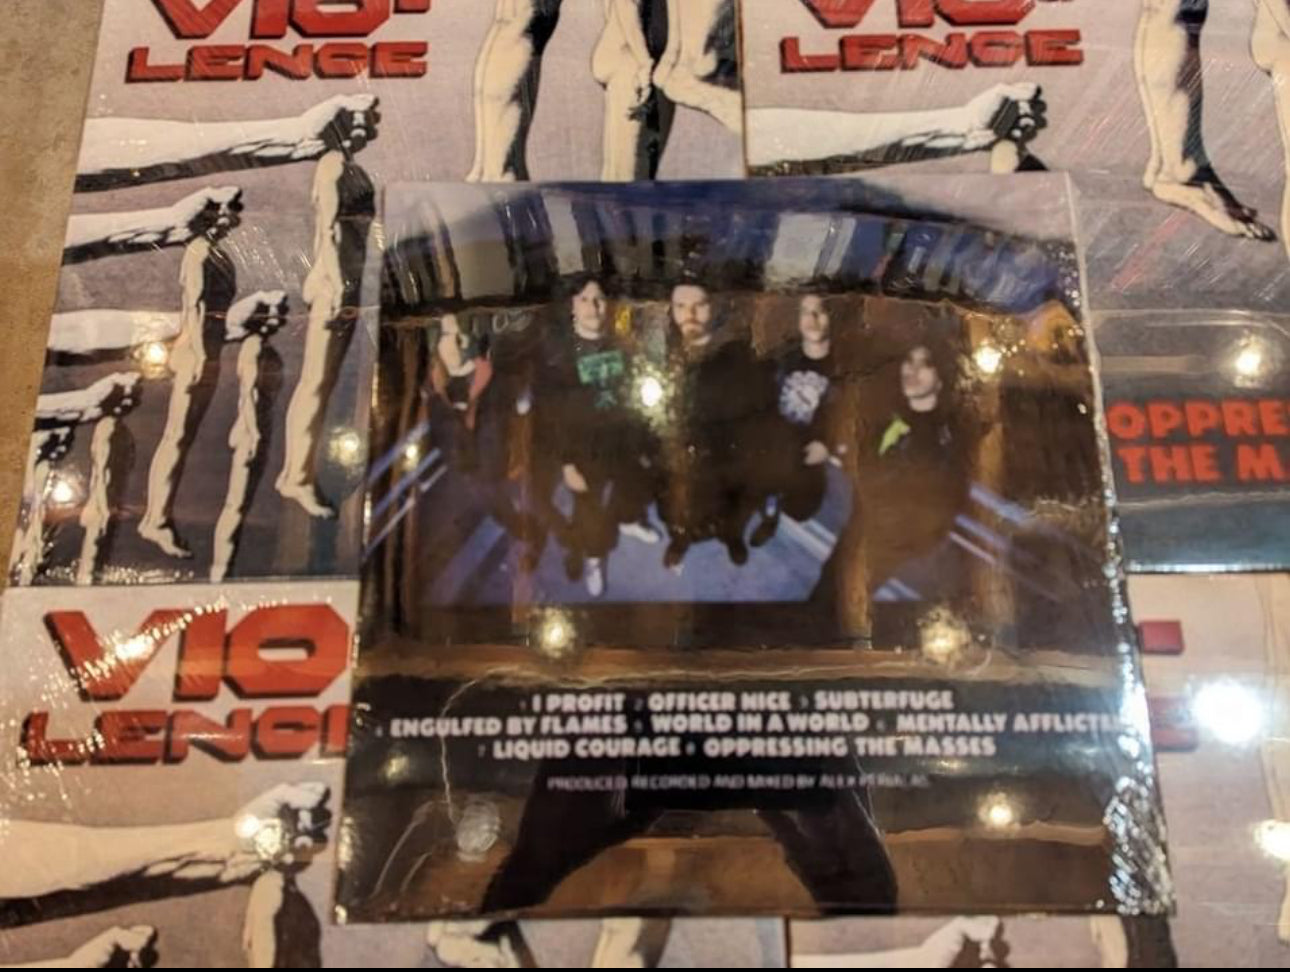 Vio-Lence Oppressing The Masses Vinyl – Vinyl 45